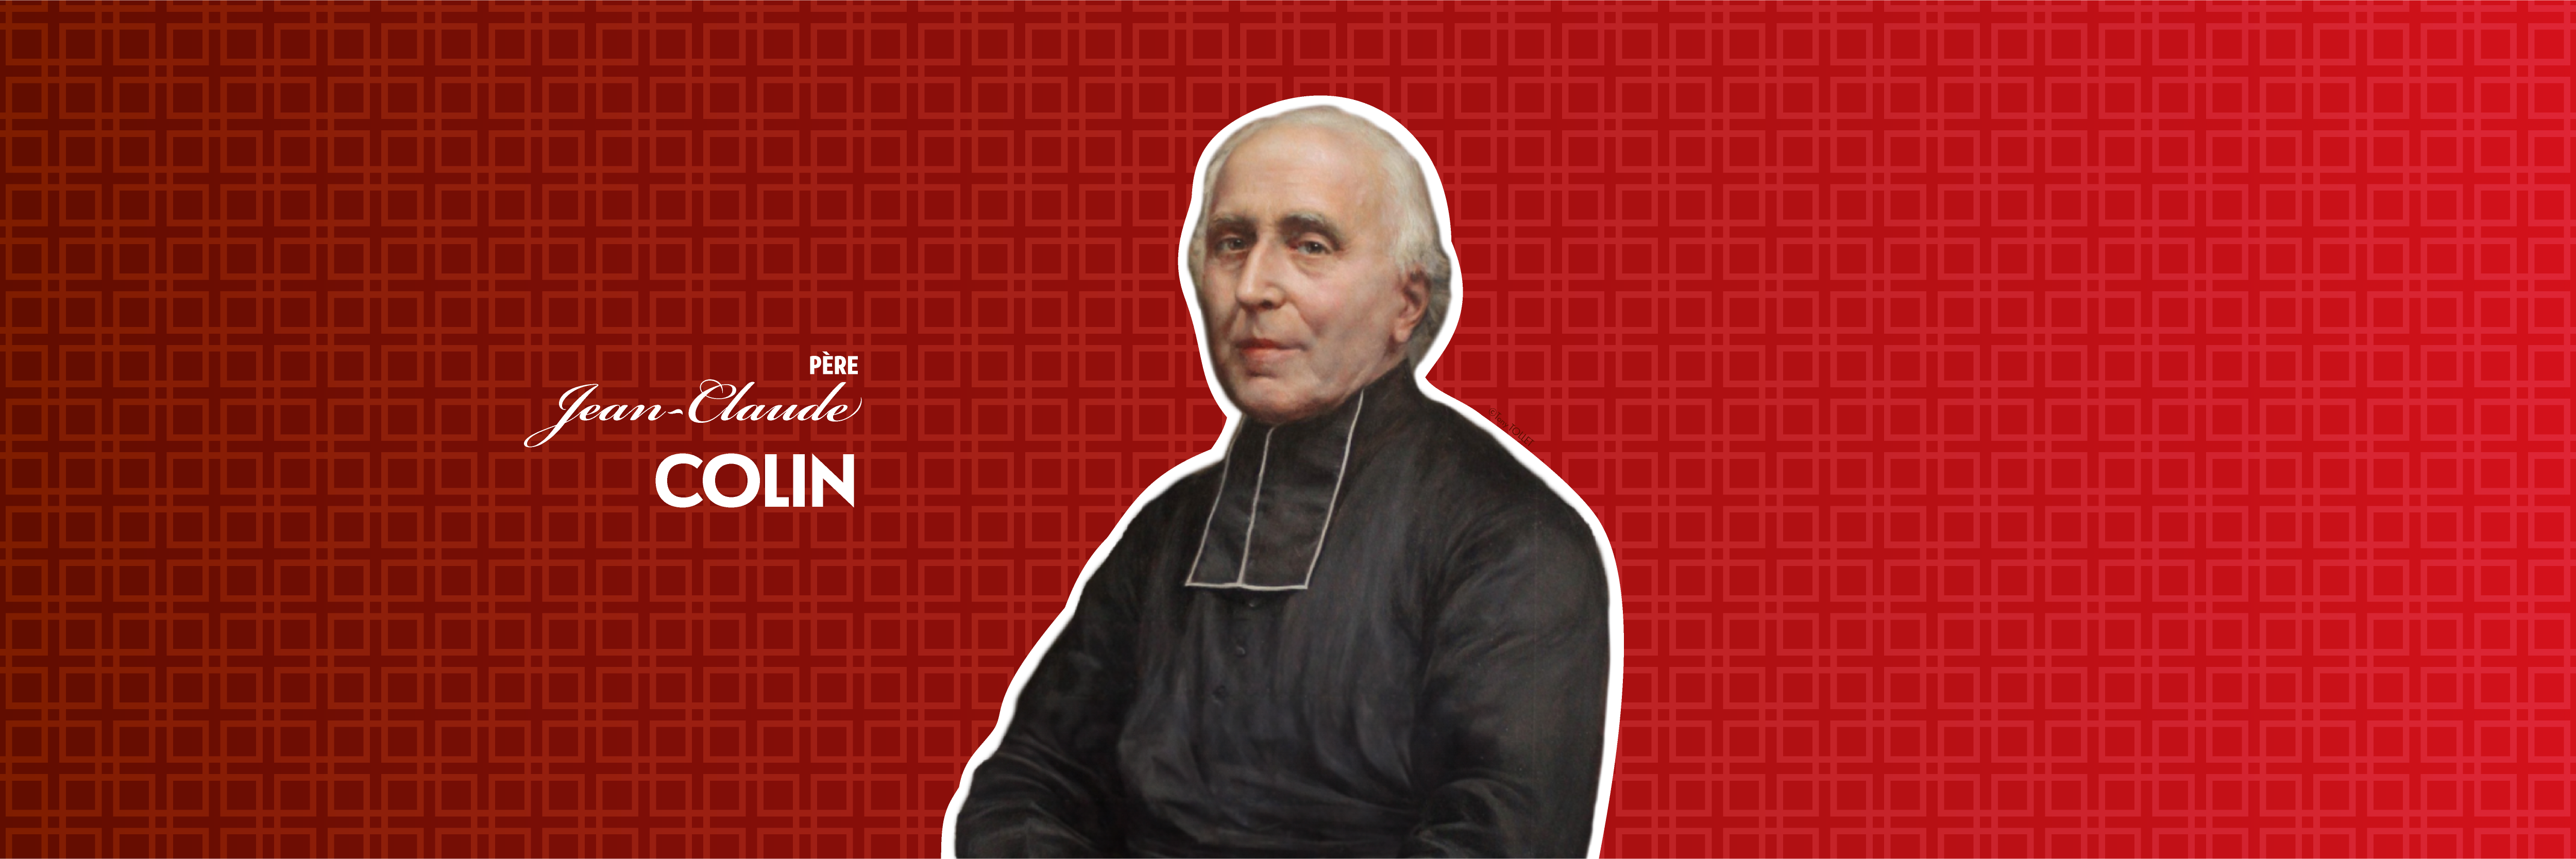 Père Jean-Claude Colin